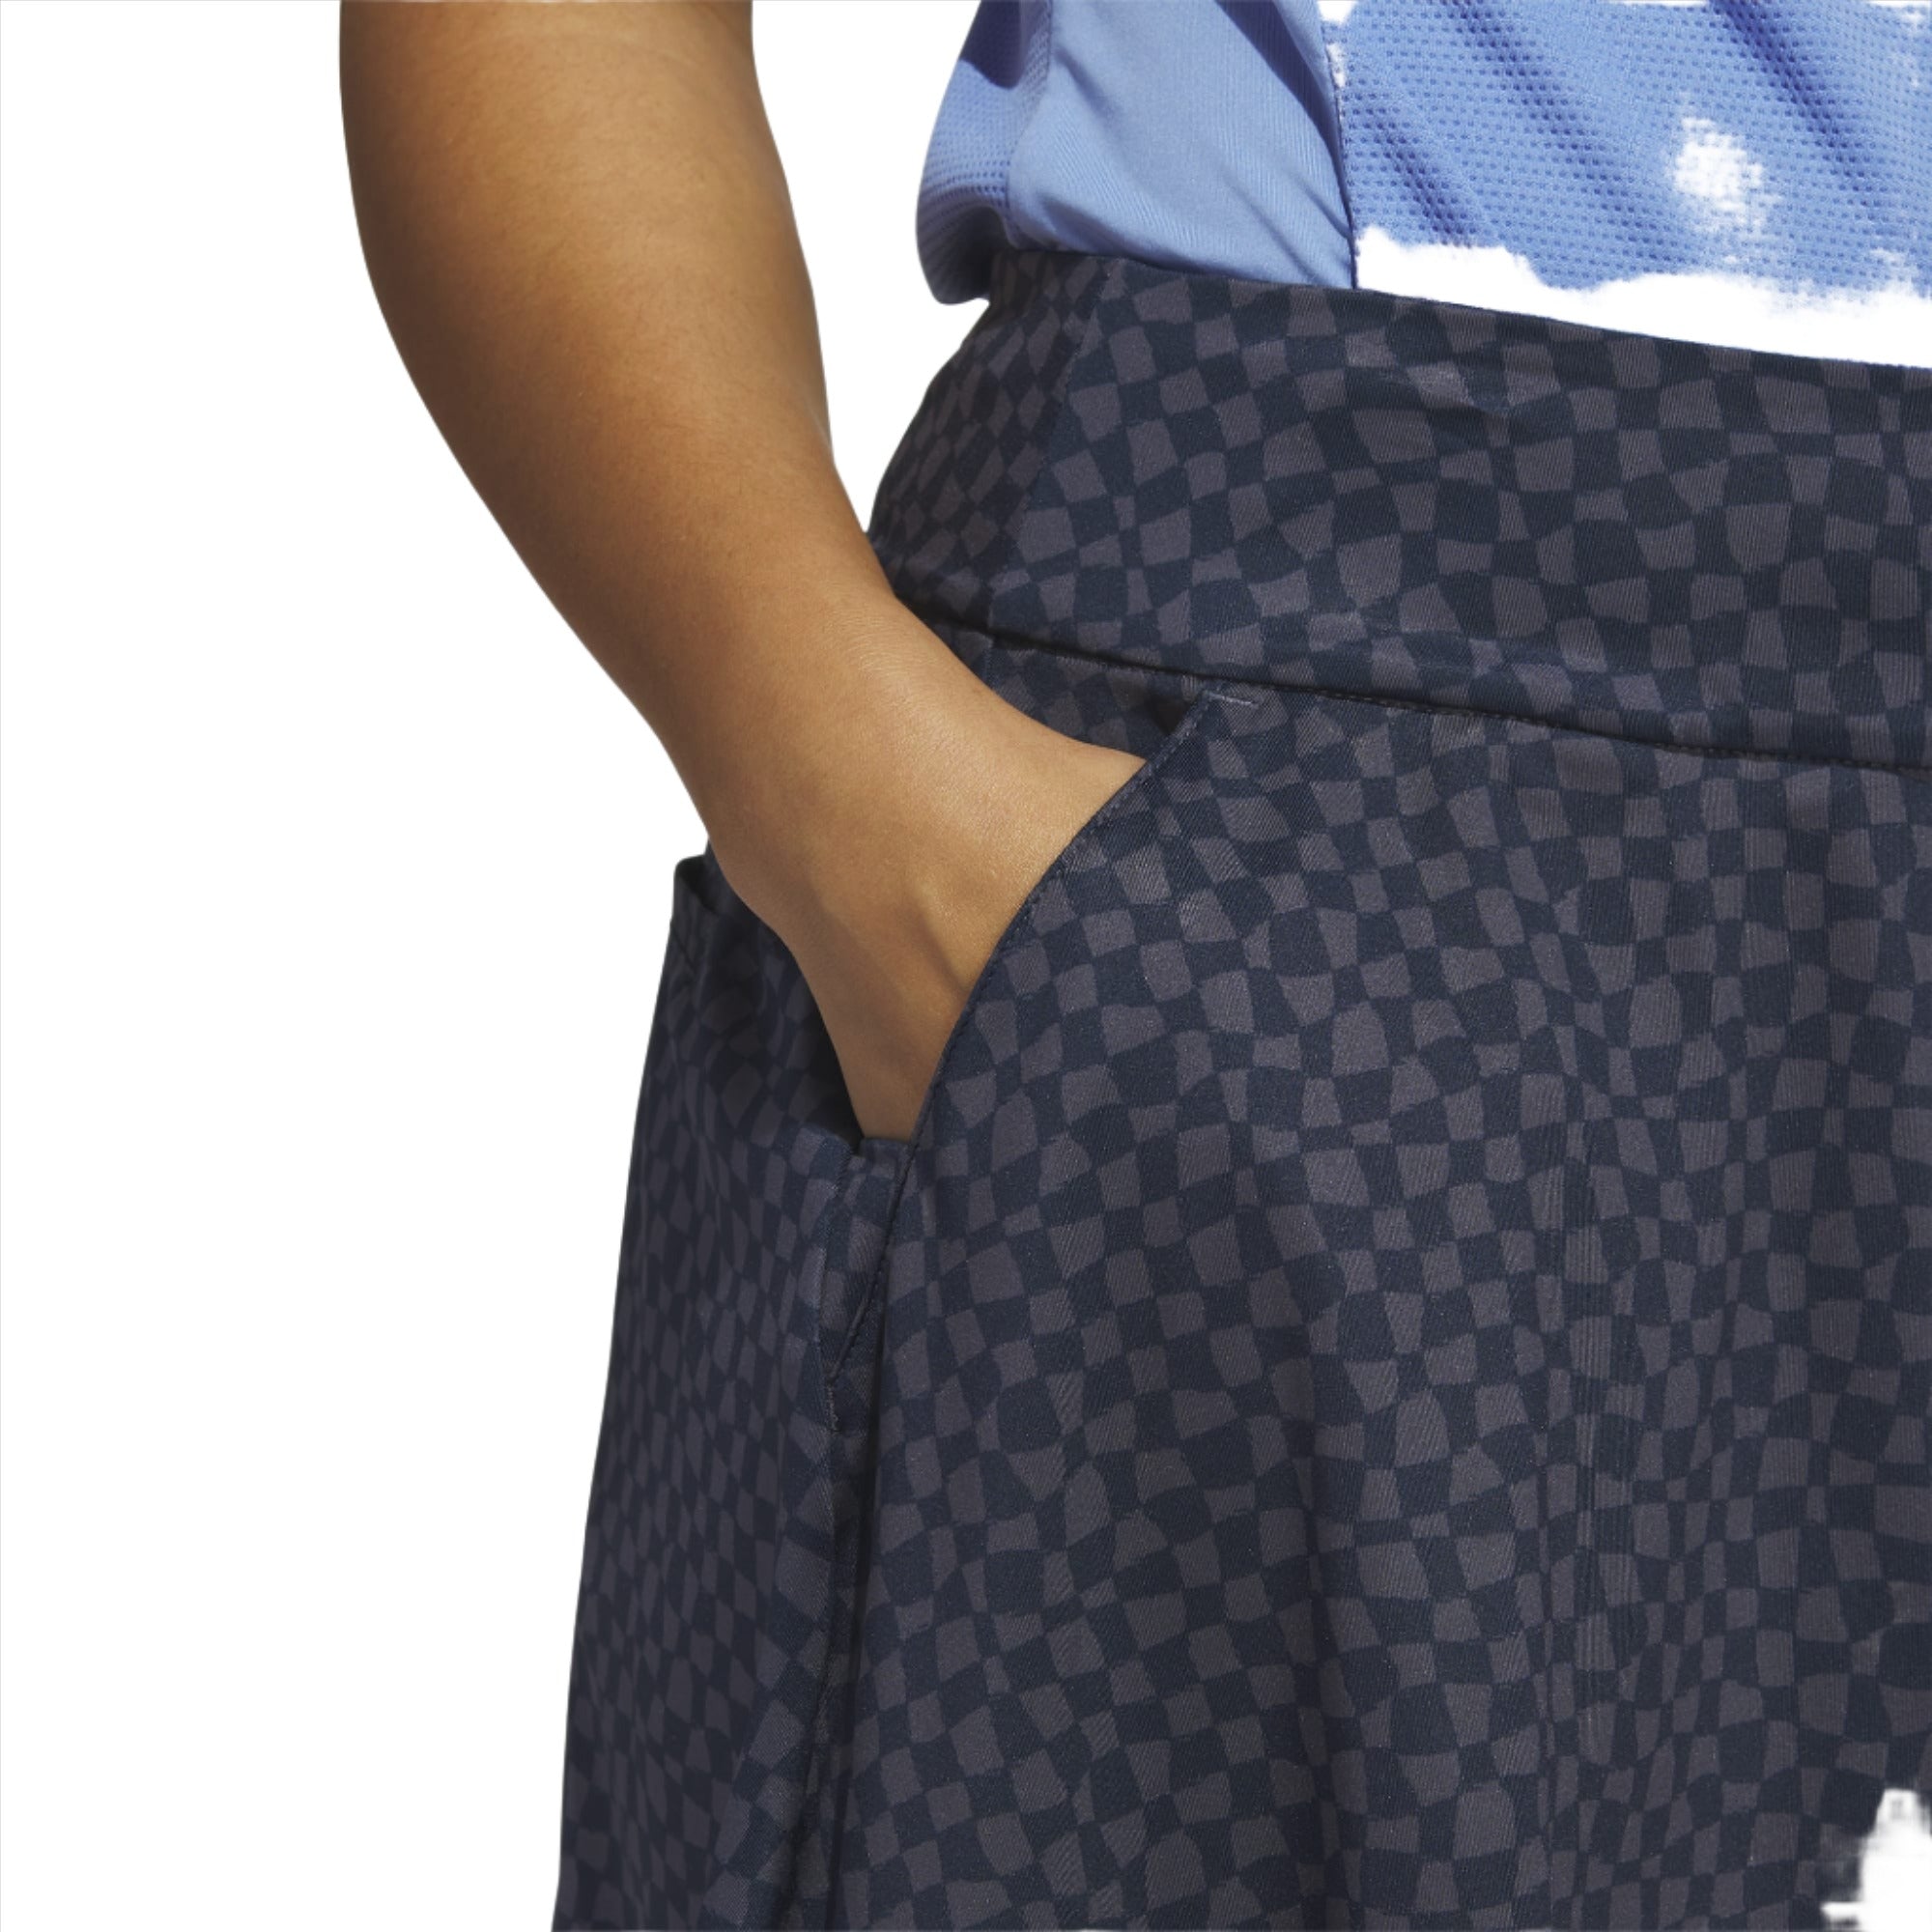 adidas Falda pantalón de golf de 16 pulgadas estampada para mujer ADIDAS SKORTS adidas